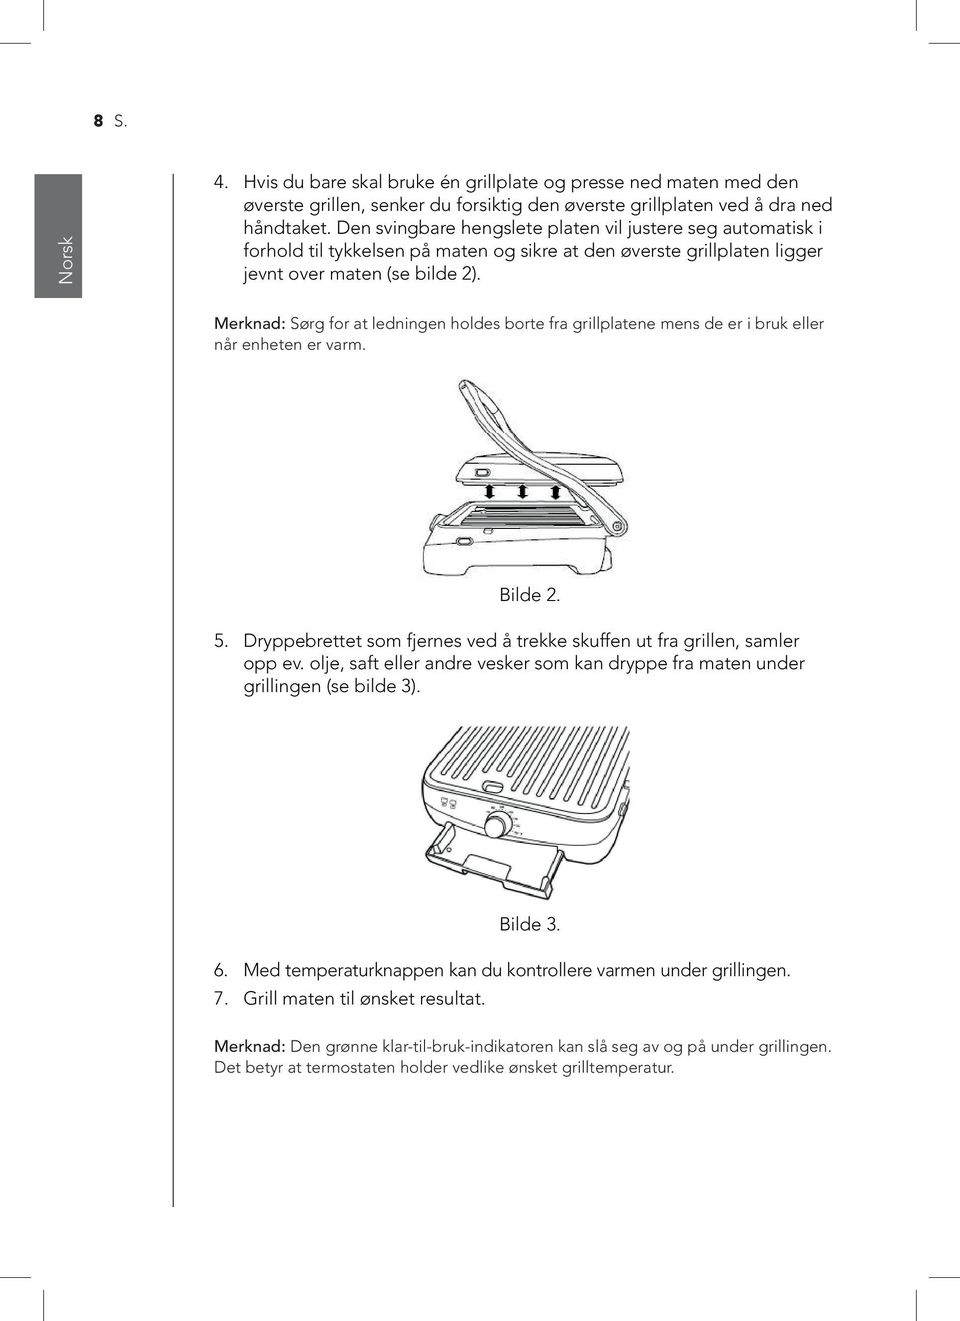 Merknad: Sørg for at ledningen holdes borte fra grillplatene mens de er i bruk eller når enheten er varm. Bilde 2. 5. Dryppebrettet som fjernes ved å trekke skuffen ut fra grillen, samler opp ev.